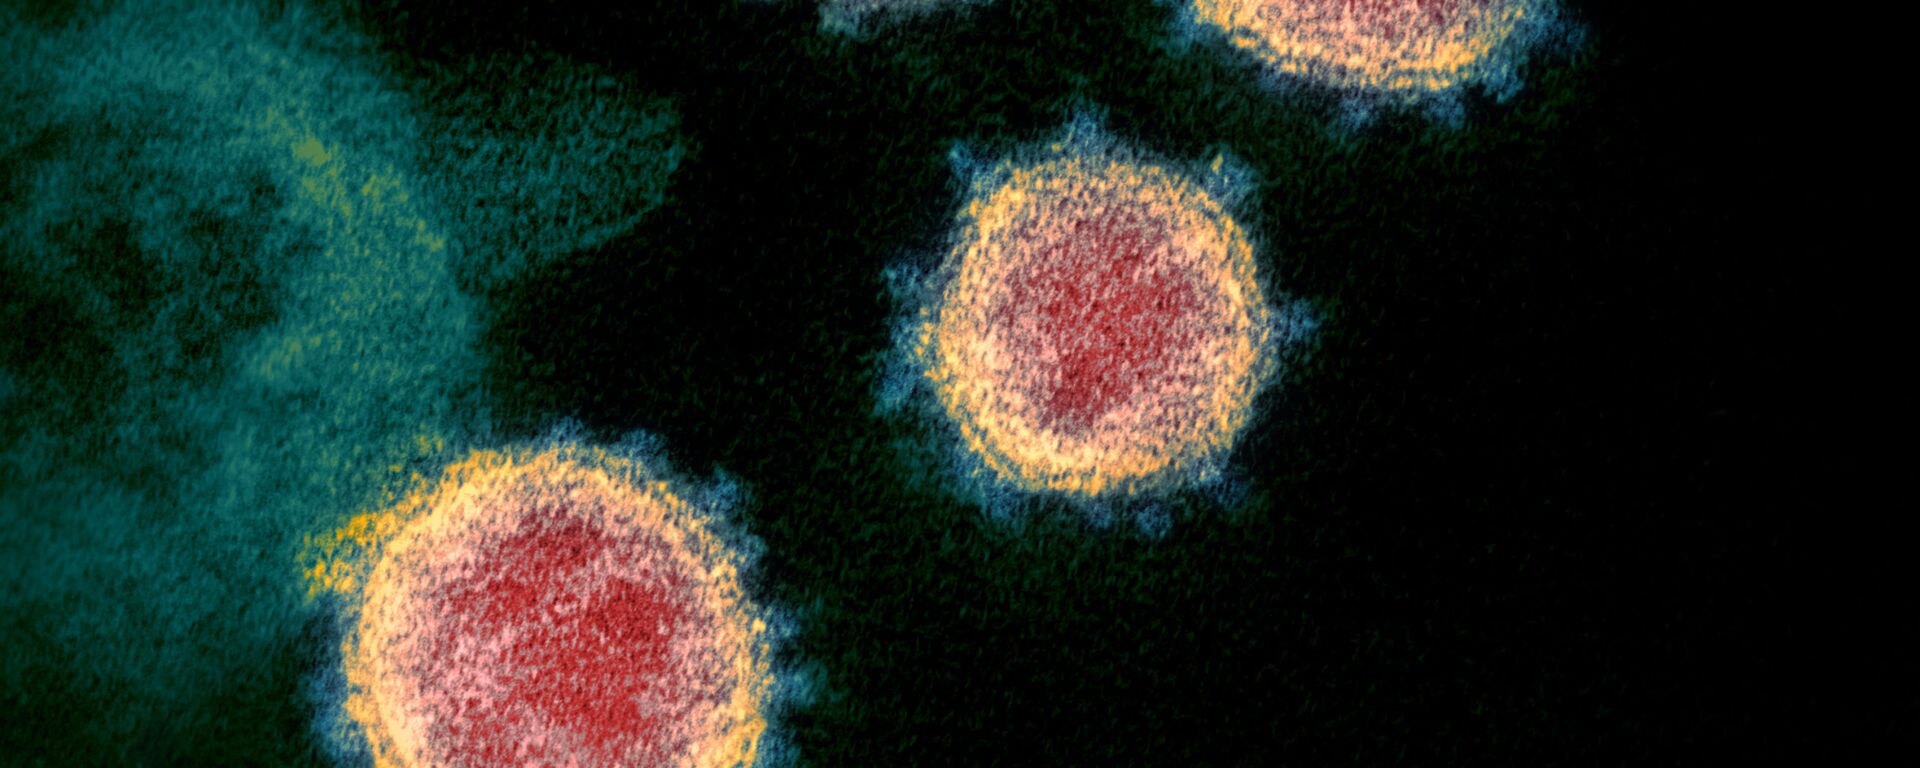 Noviy koronavirus atipichnoy pnevmonii SARS-CoV-2. Takje izvestniy kak 2019-nCoV - Sputnik O‘zbekiston, 1920, 28.08.2020